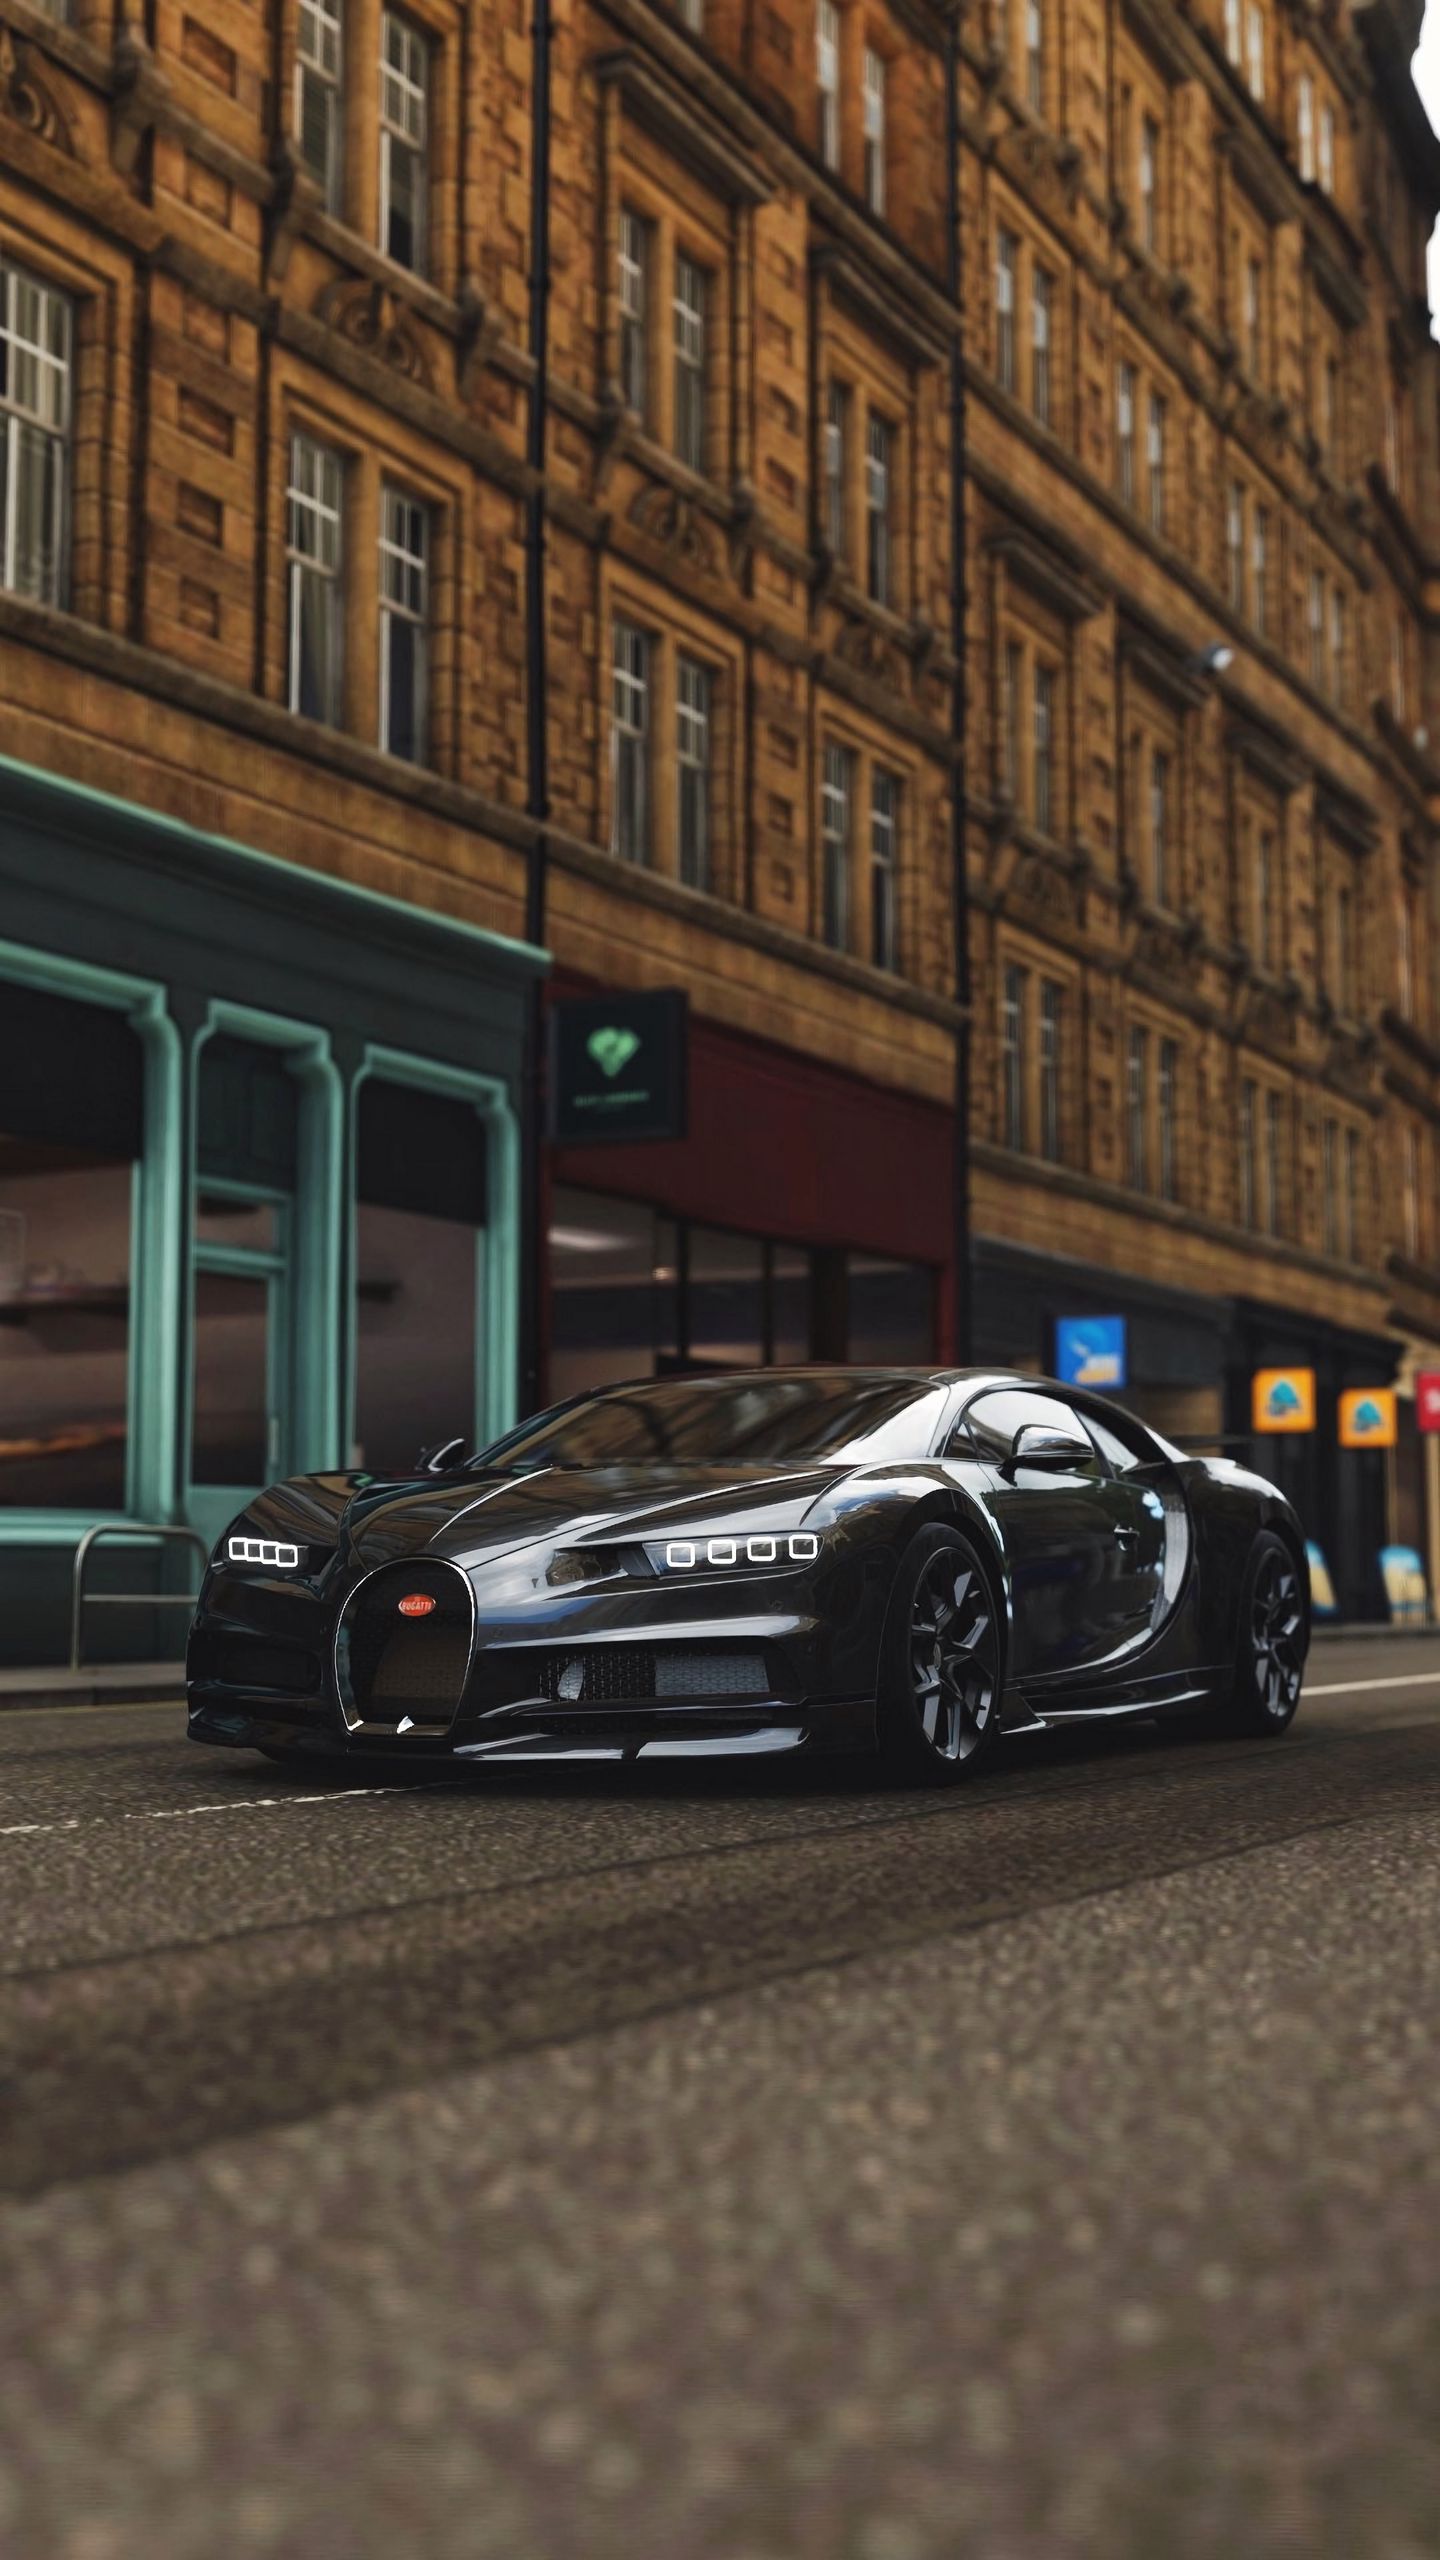 Wallpaper bugatti chiron: Sở hữu hình nền Bugatti Chiron đẹp như mơ để thể hiện đẳng cấp và gu thẩm mỹ cao của bạn. Hình nền với chất lượng hình ảnh sắc nét đến từng chi tiết mang lại trải nghiệm tuyệt vời cho người dùng yêu thích xe hơi.